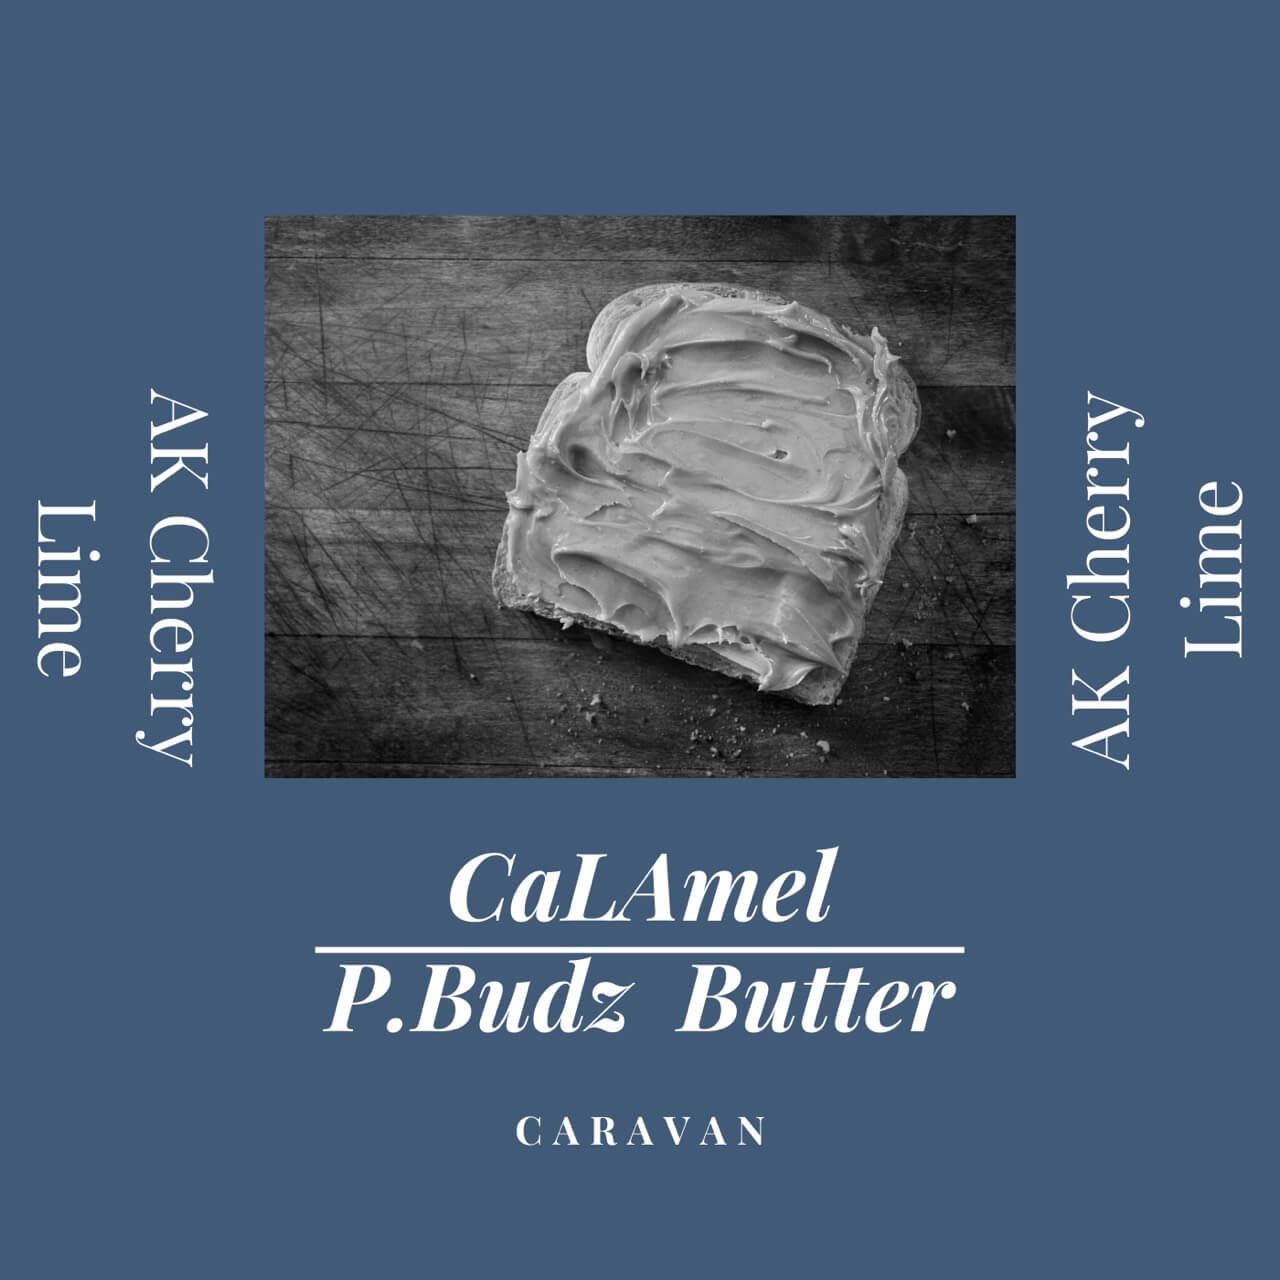 CaLAmel P.Budz Butter